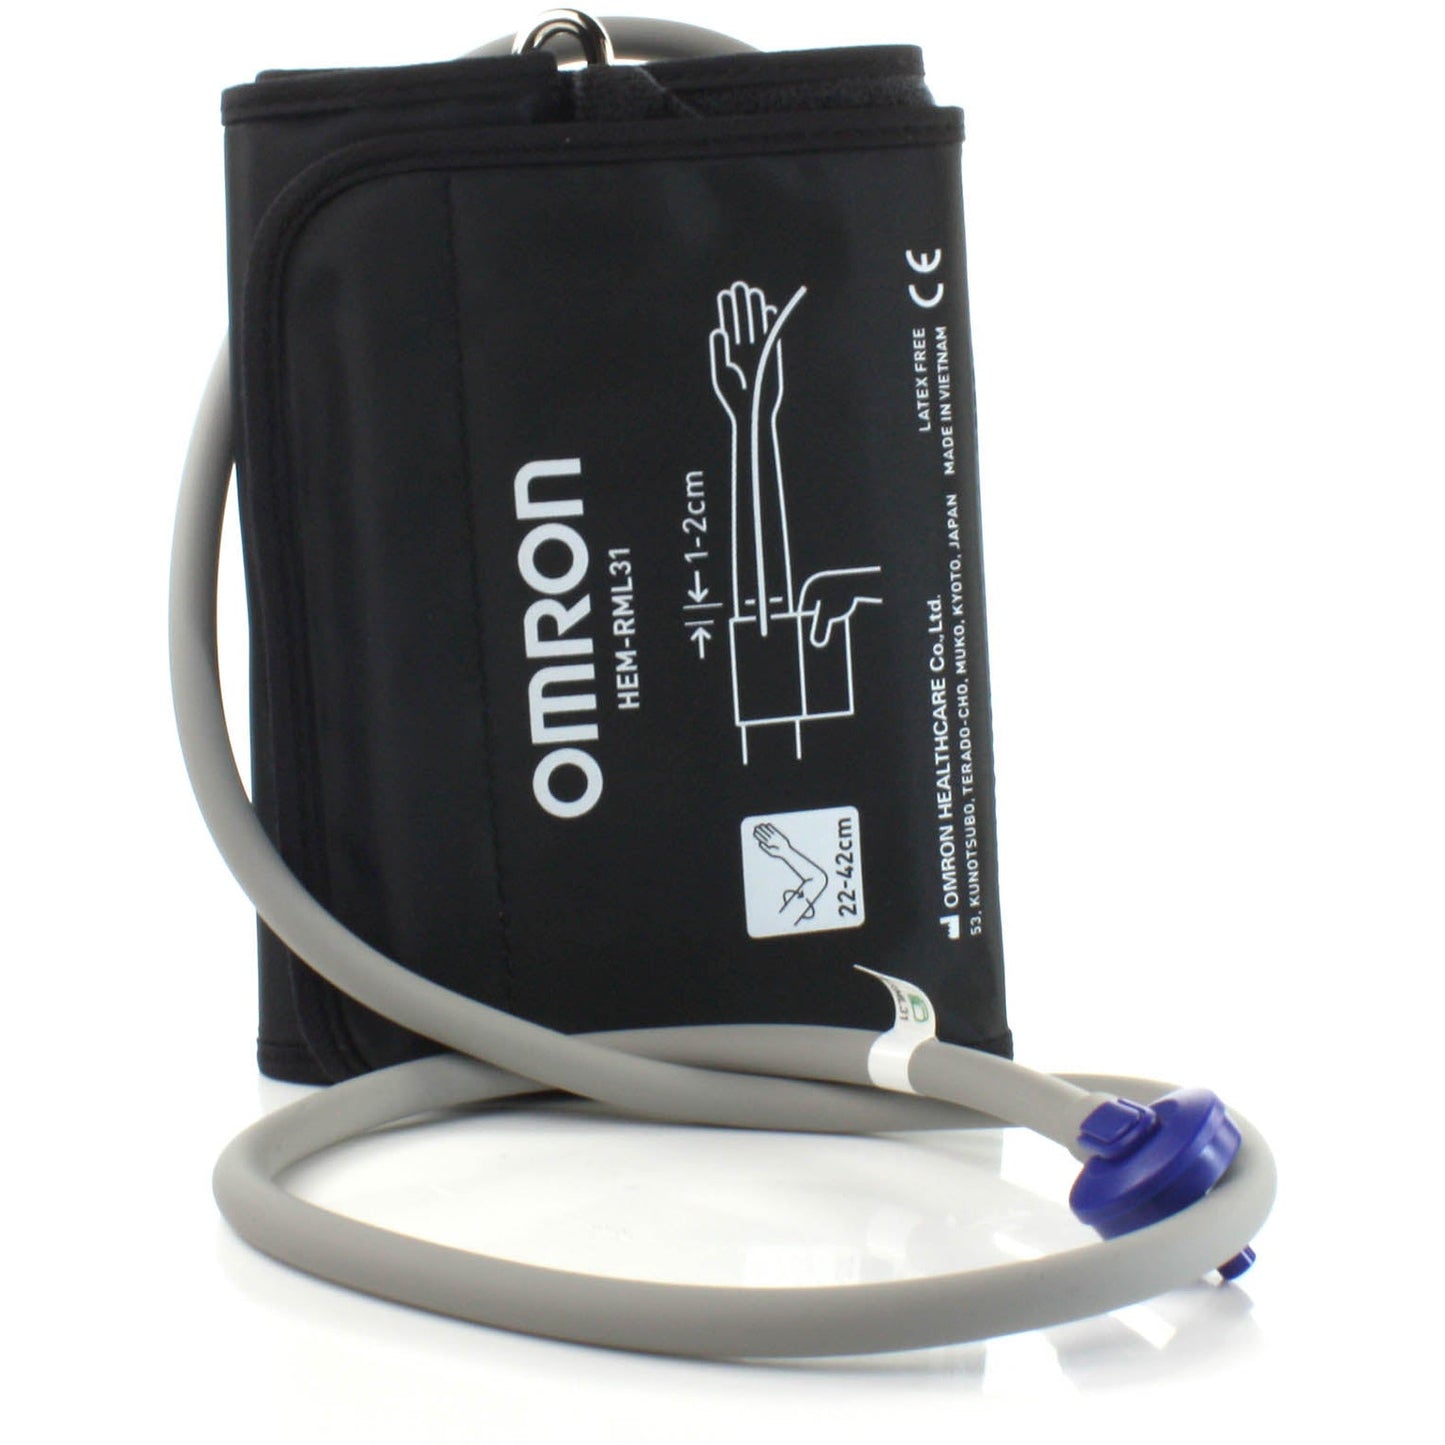 Omron M3 LED Blood Pressure Monitor